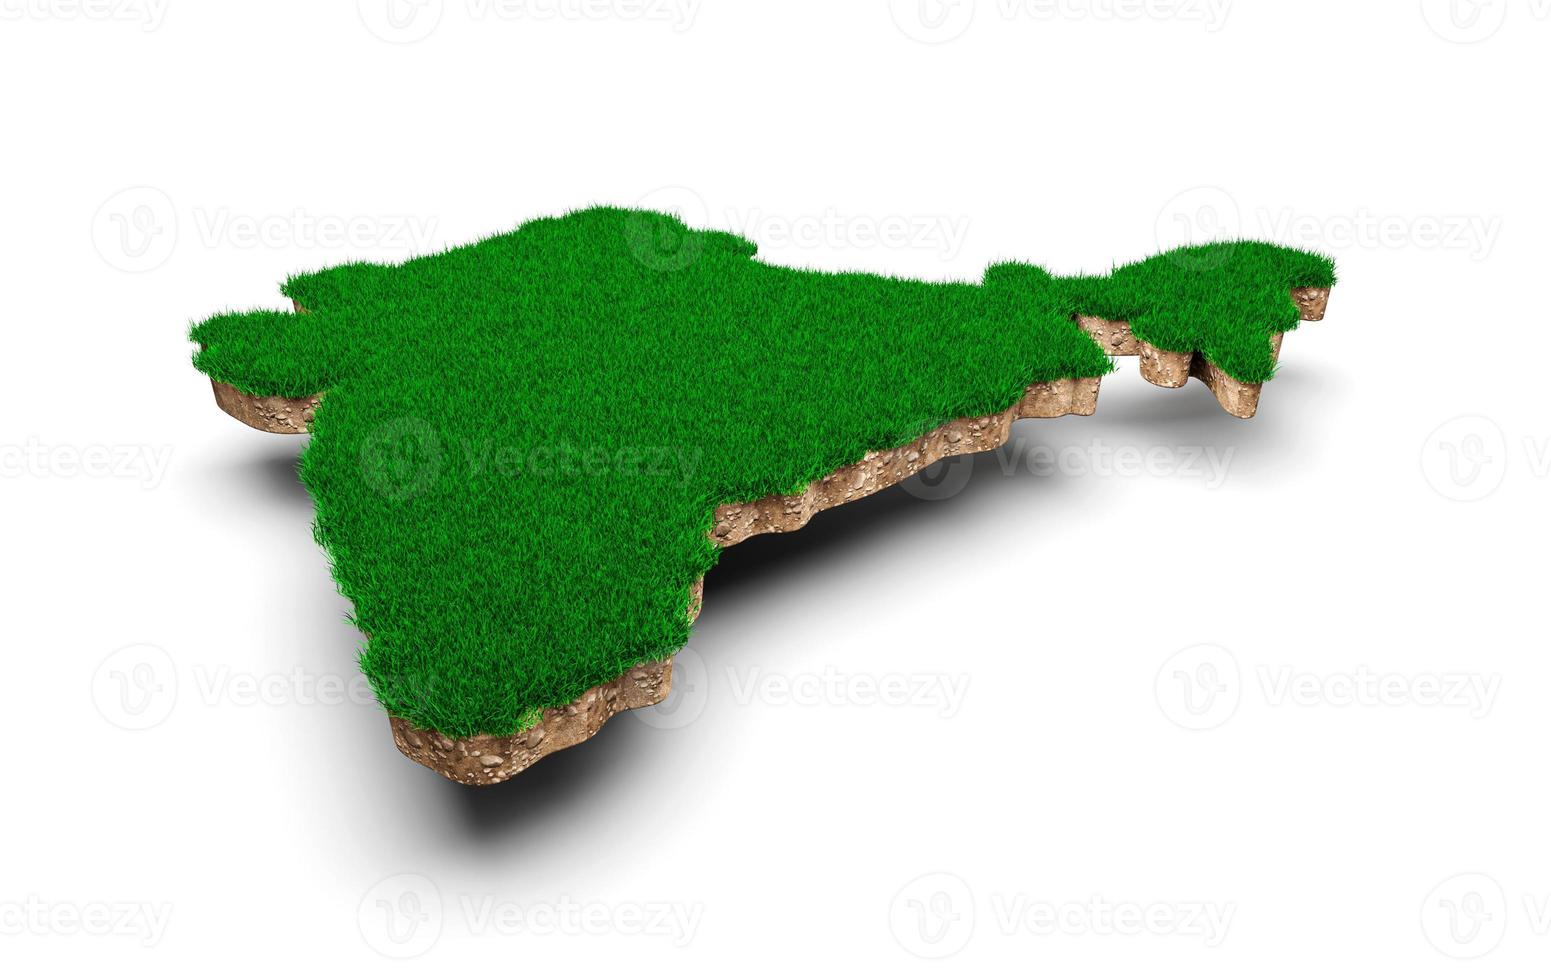 índia mapa solo geologia terra seção transversal com grama verde ilustração 3d foto